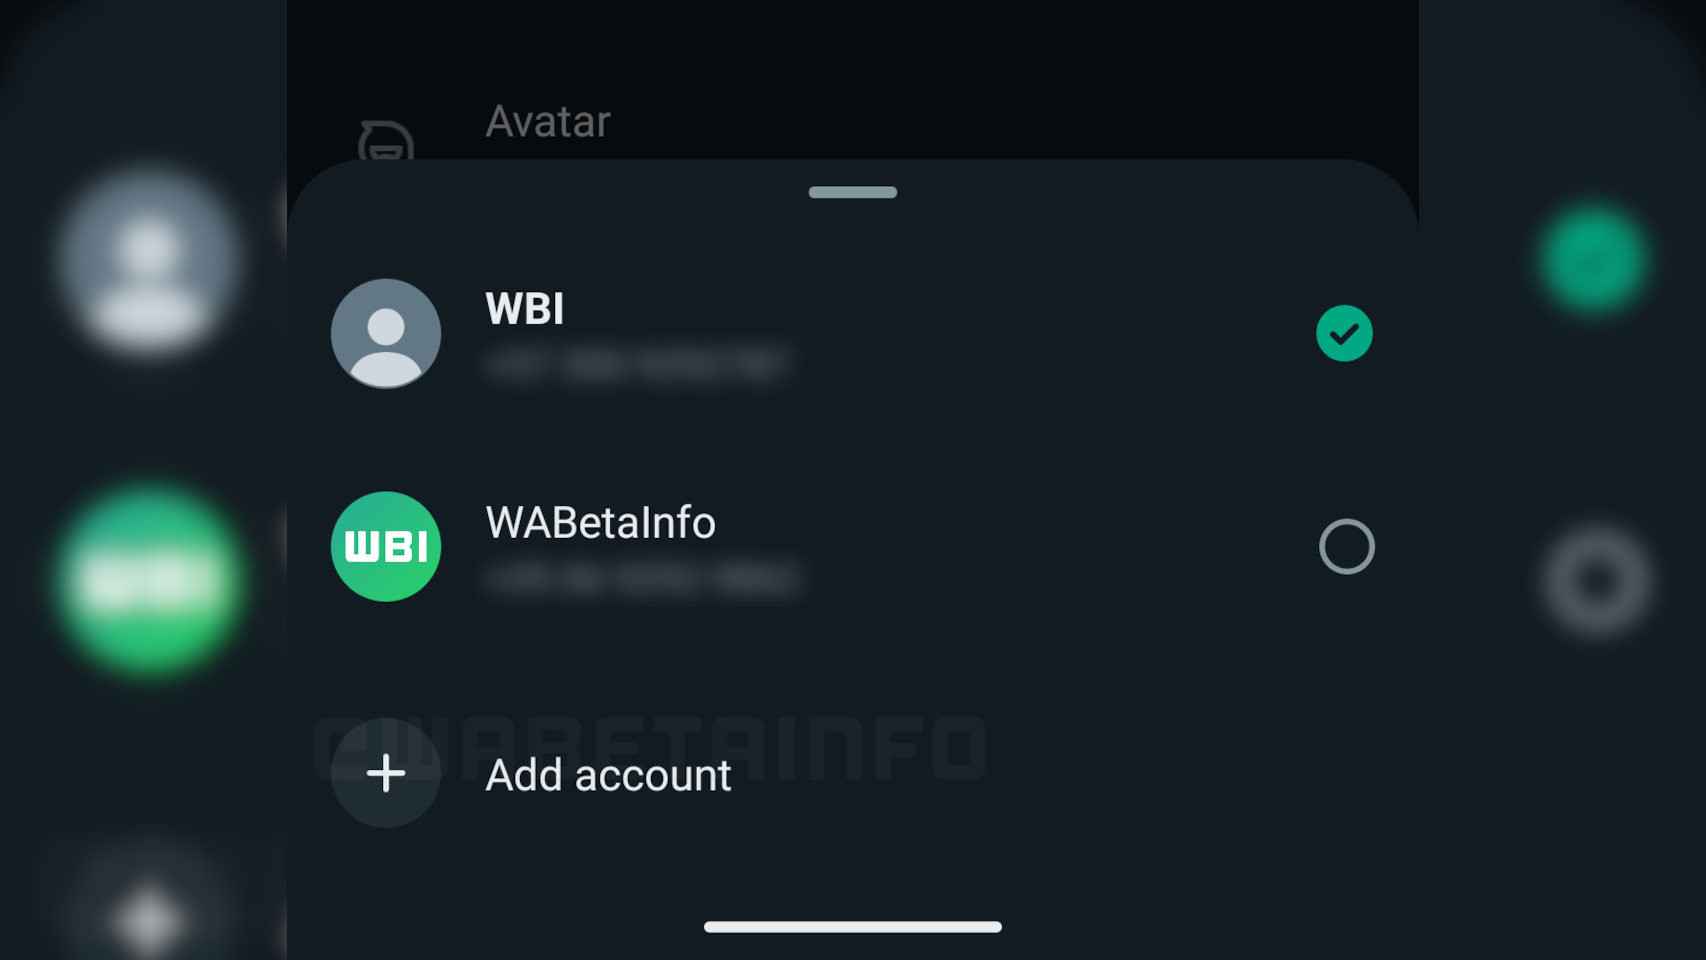 New menu to switch WhatsApp account